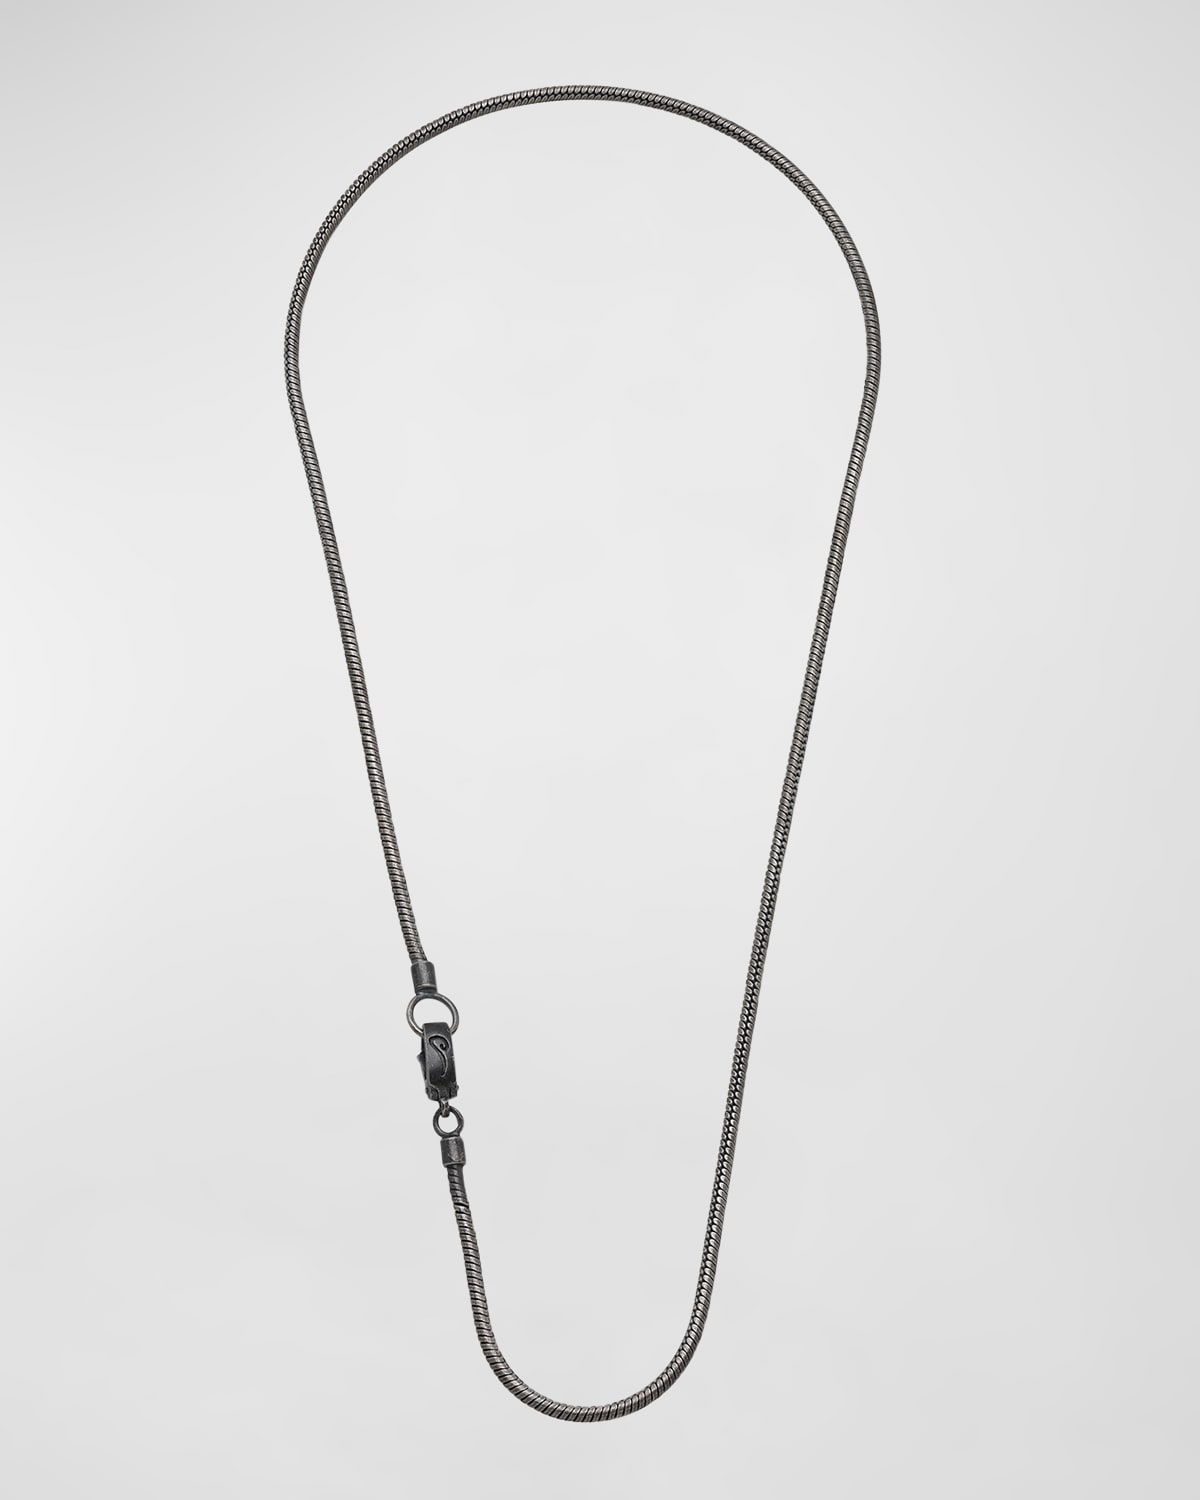 Marco Dal Maso Classy Oxidized Silver Necklace, 24"l